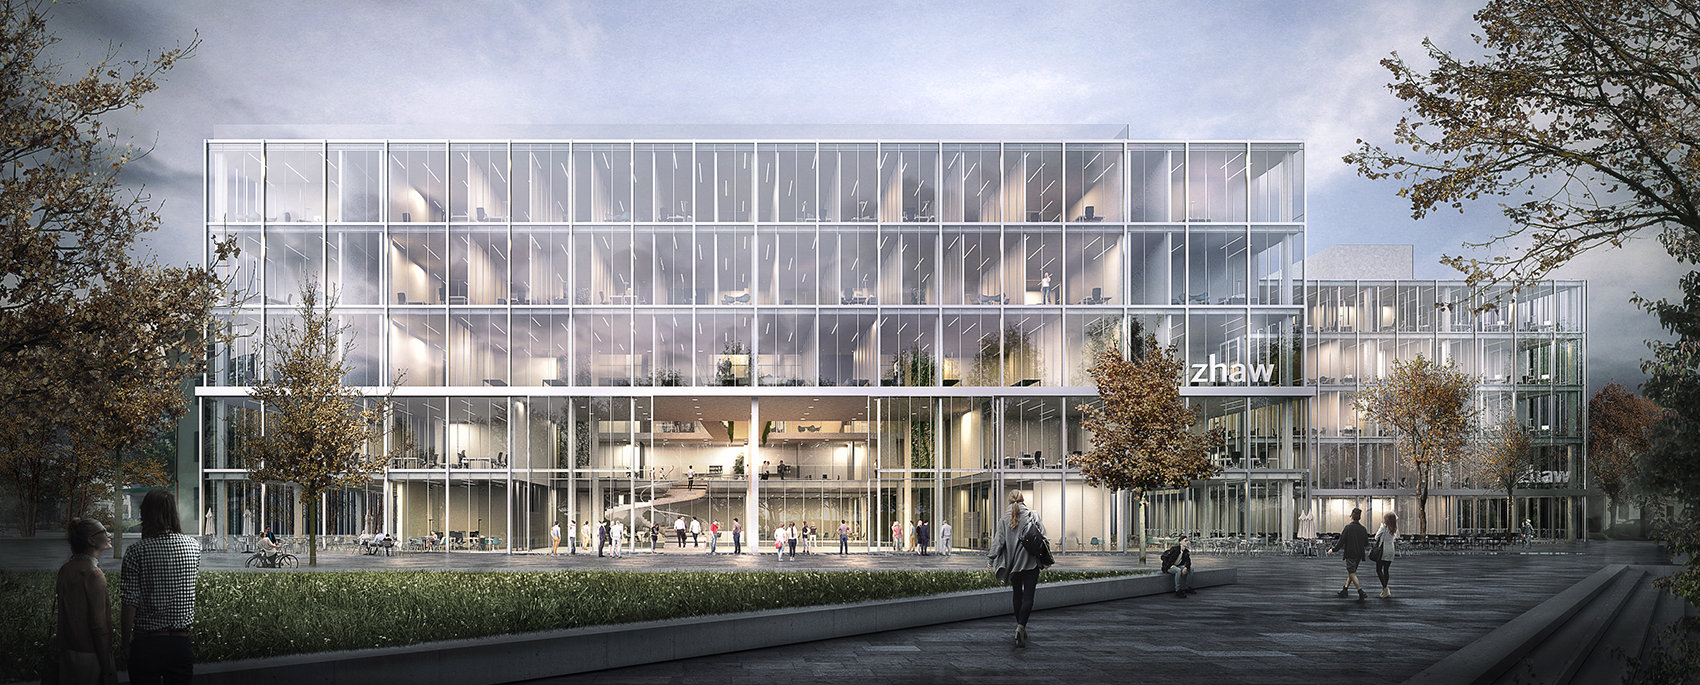 3D-Architekturvisualisierung: ZHAW Campus